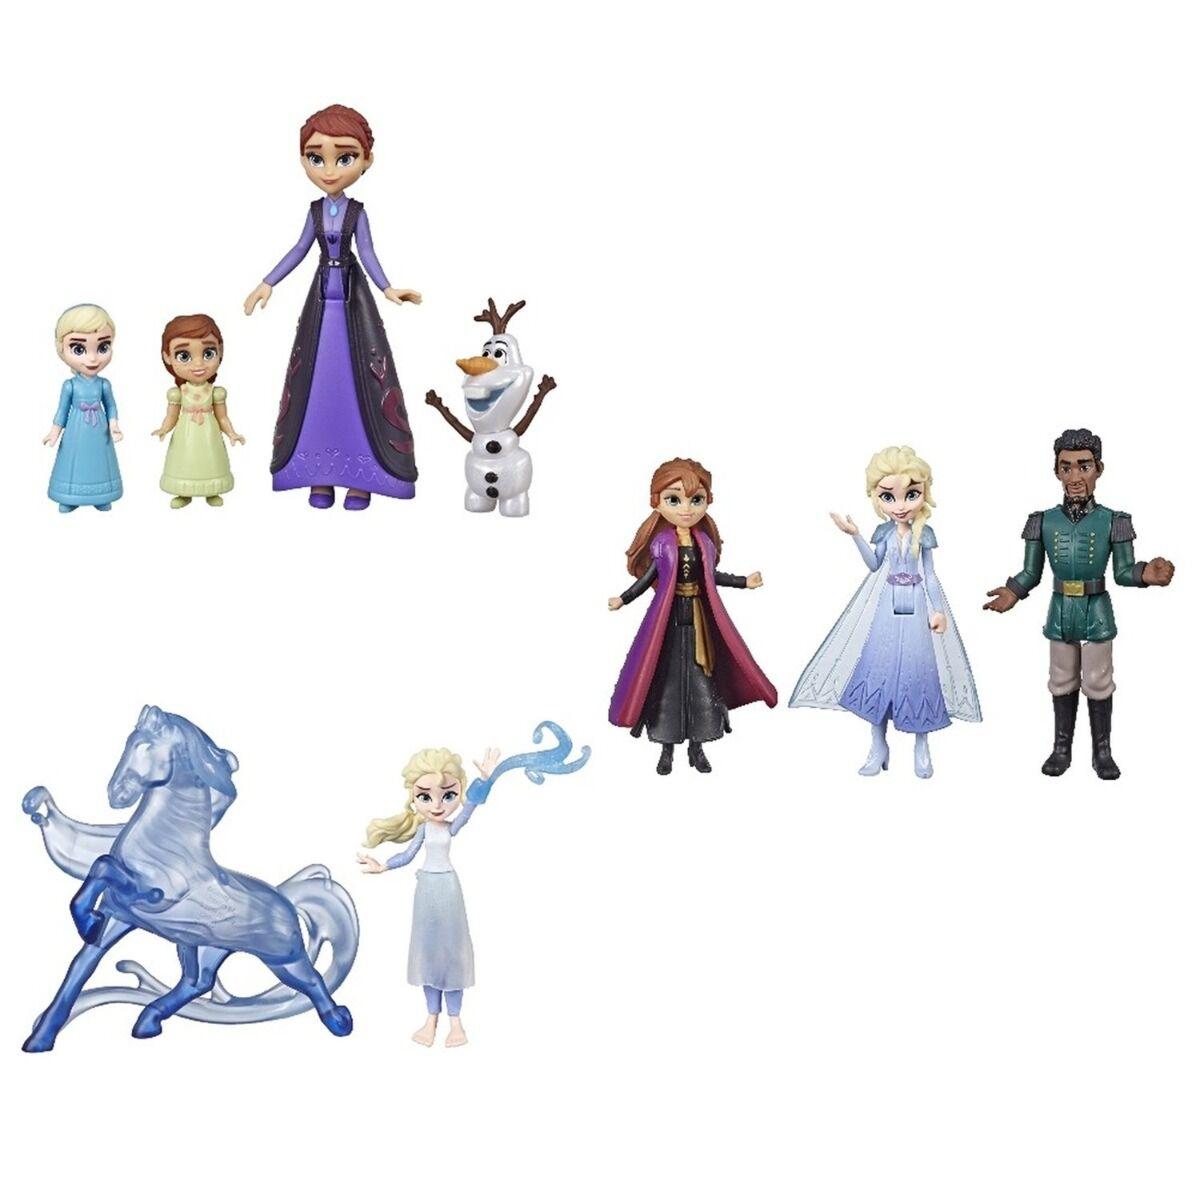 Disney Frozen: Игровой набор Холодное сердце 2 делюкс в ассортименте, фото 1